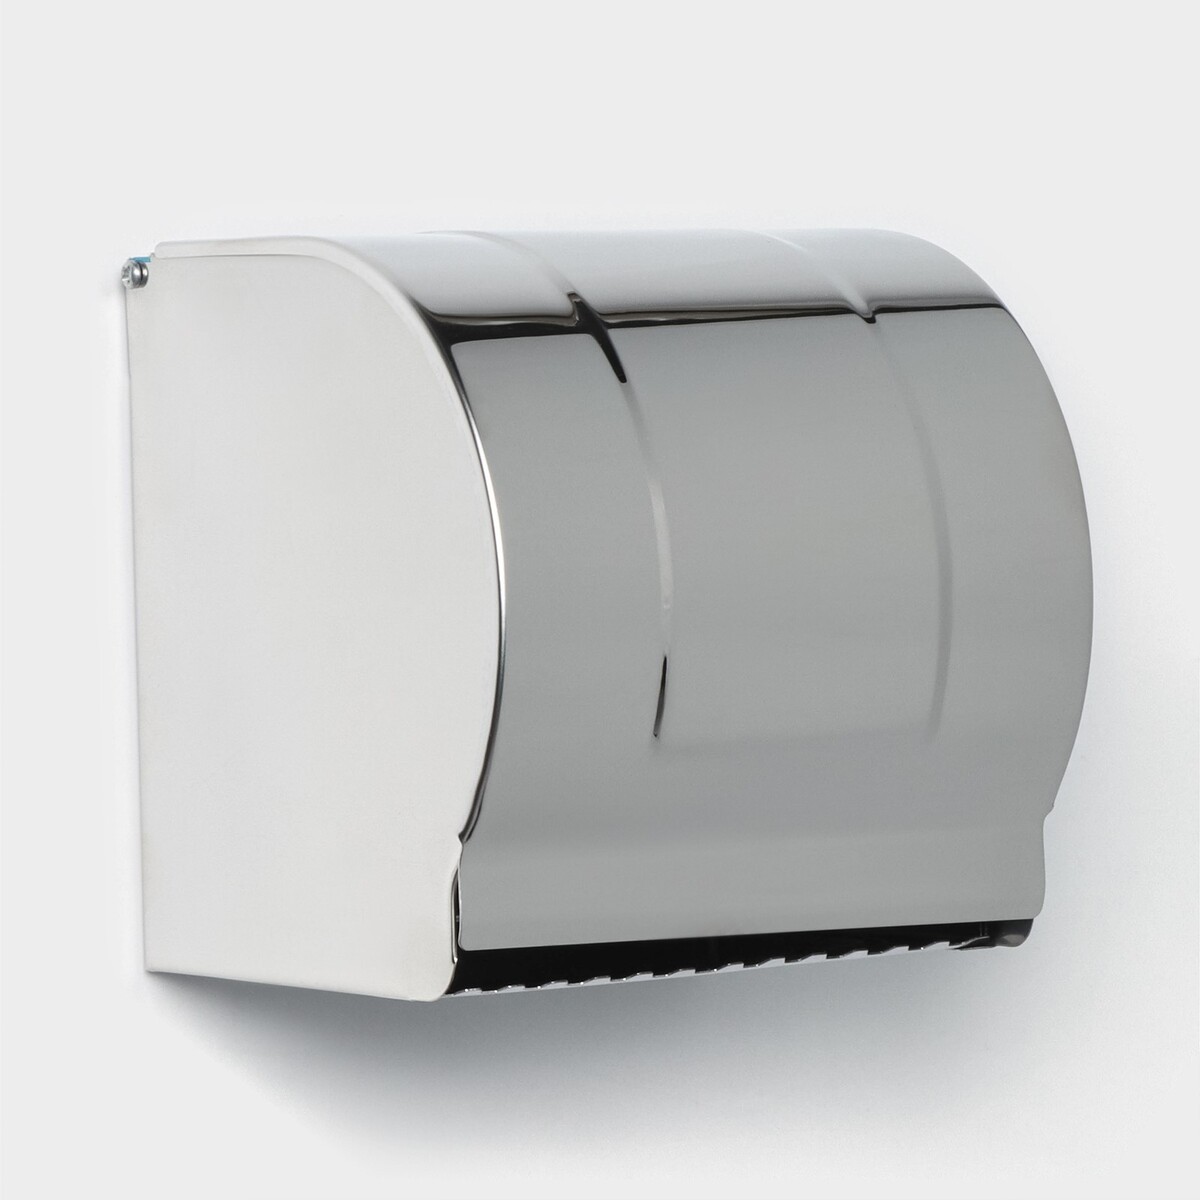 Держатель для туалетной бумаги, без втулки 12×12,5×12 см, цвет хром зеркальный держатель для туалетной бумаги металл хром frap f1603 3